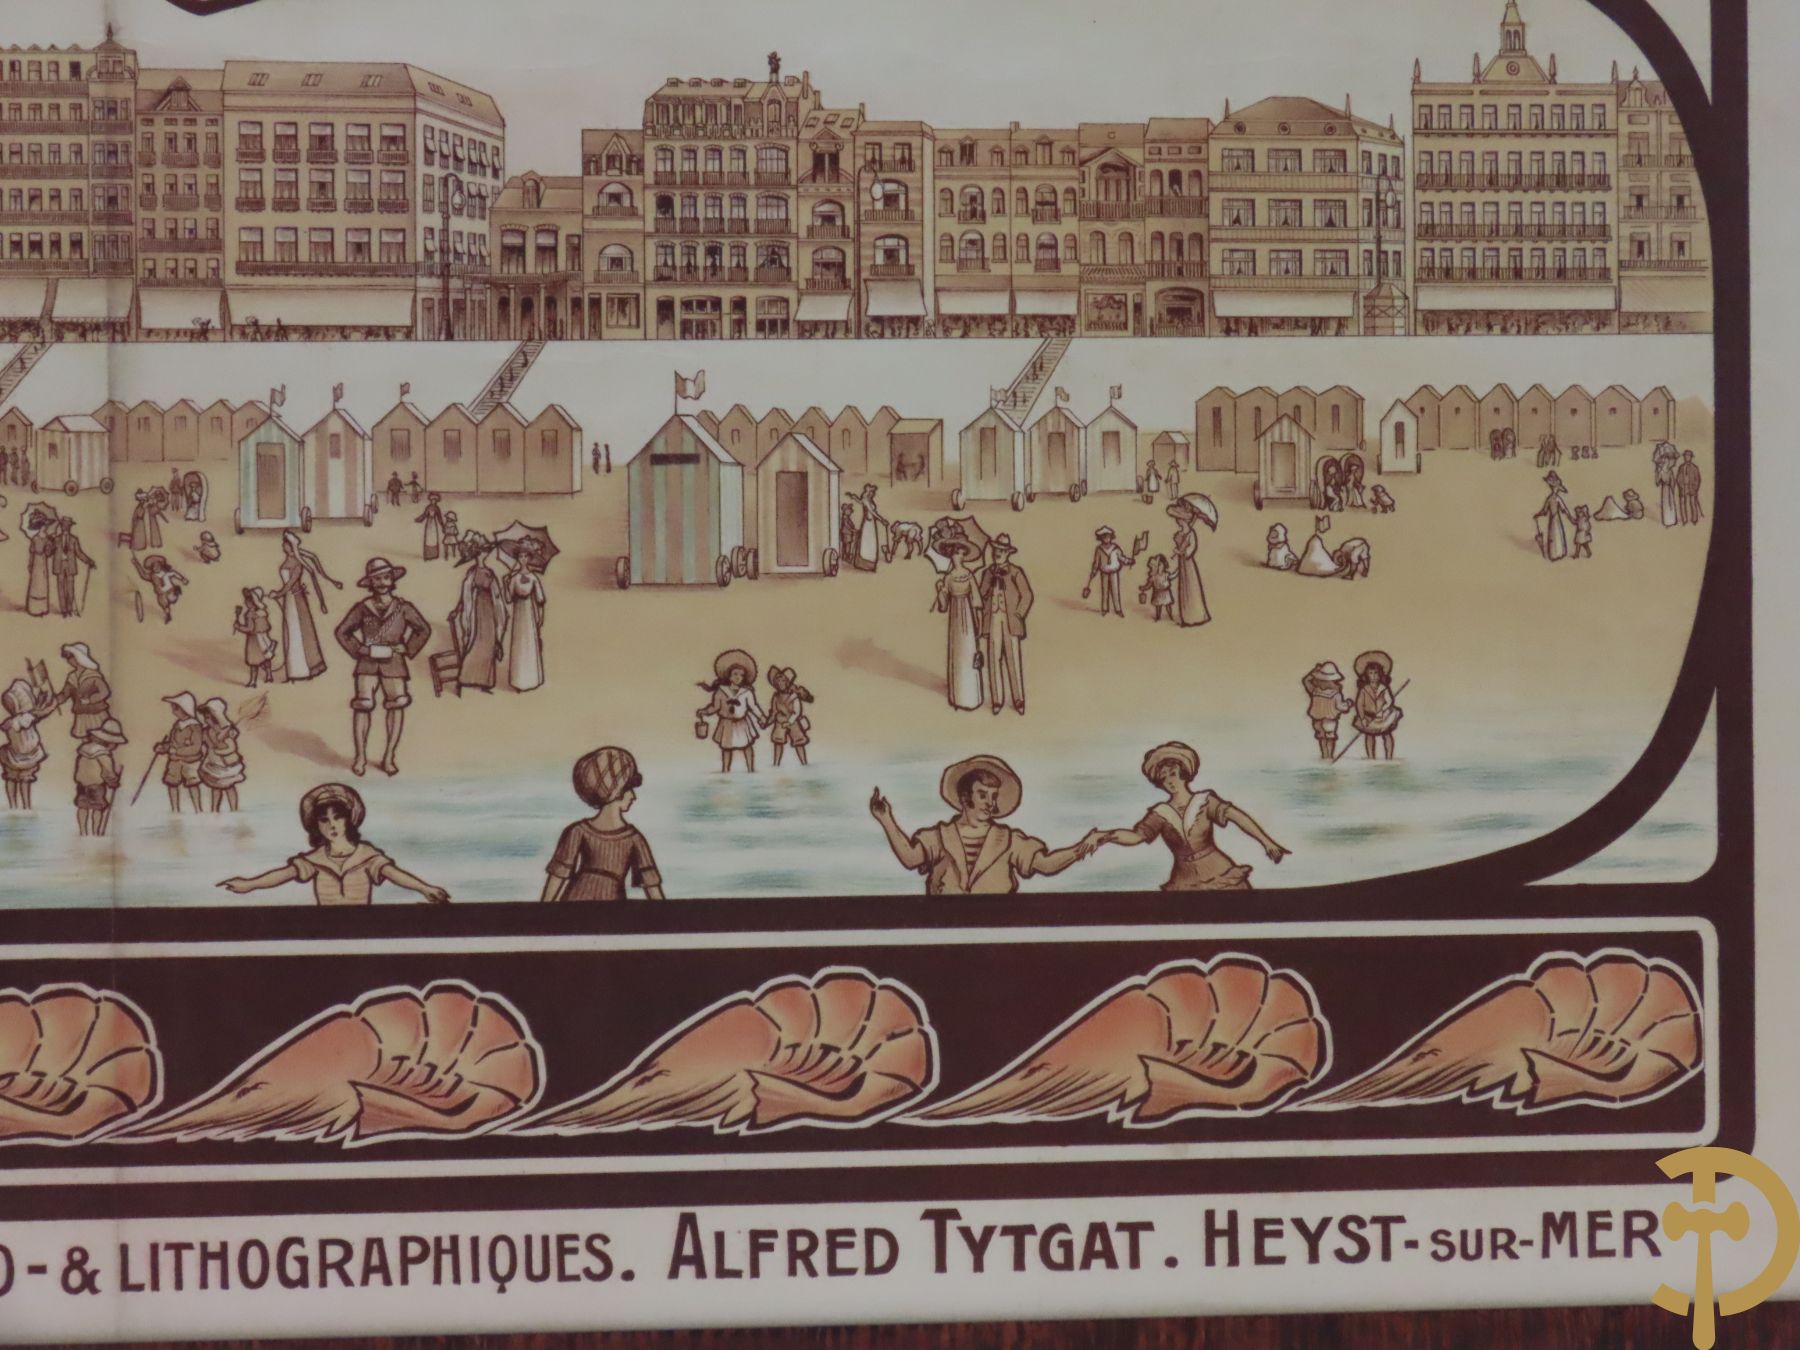 Oude affiche van etablissements Typo- & lithographiques -Alfred Tytgat - Heyst sur Mer